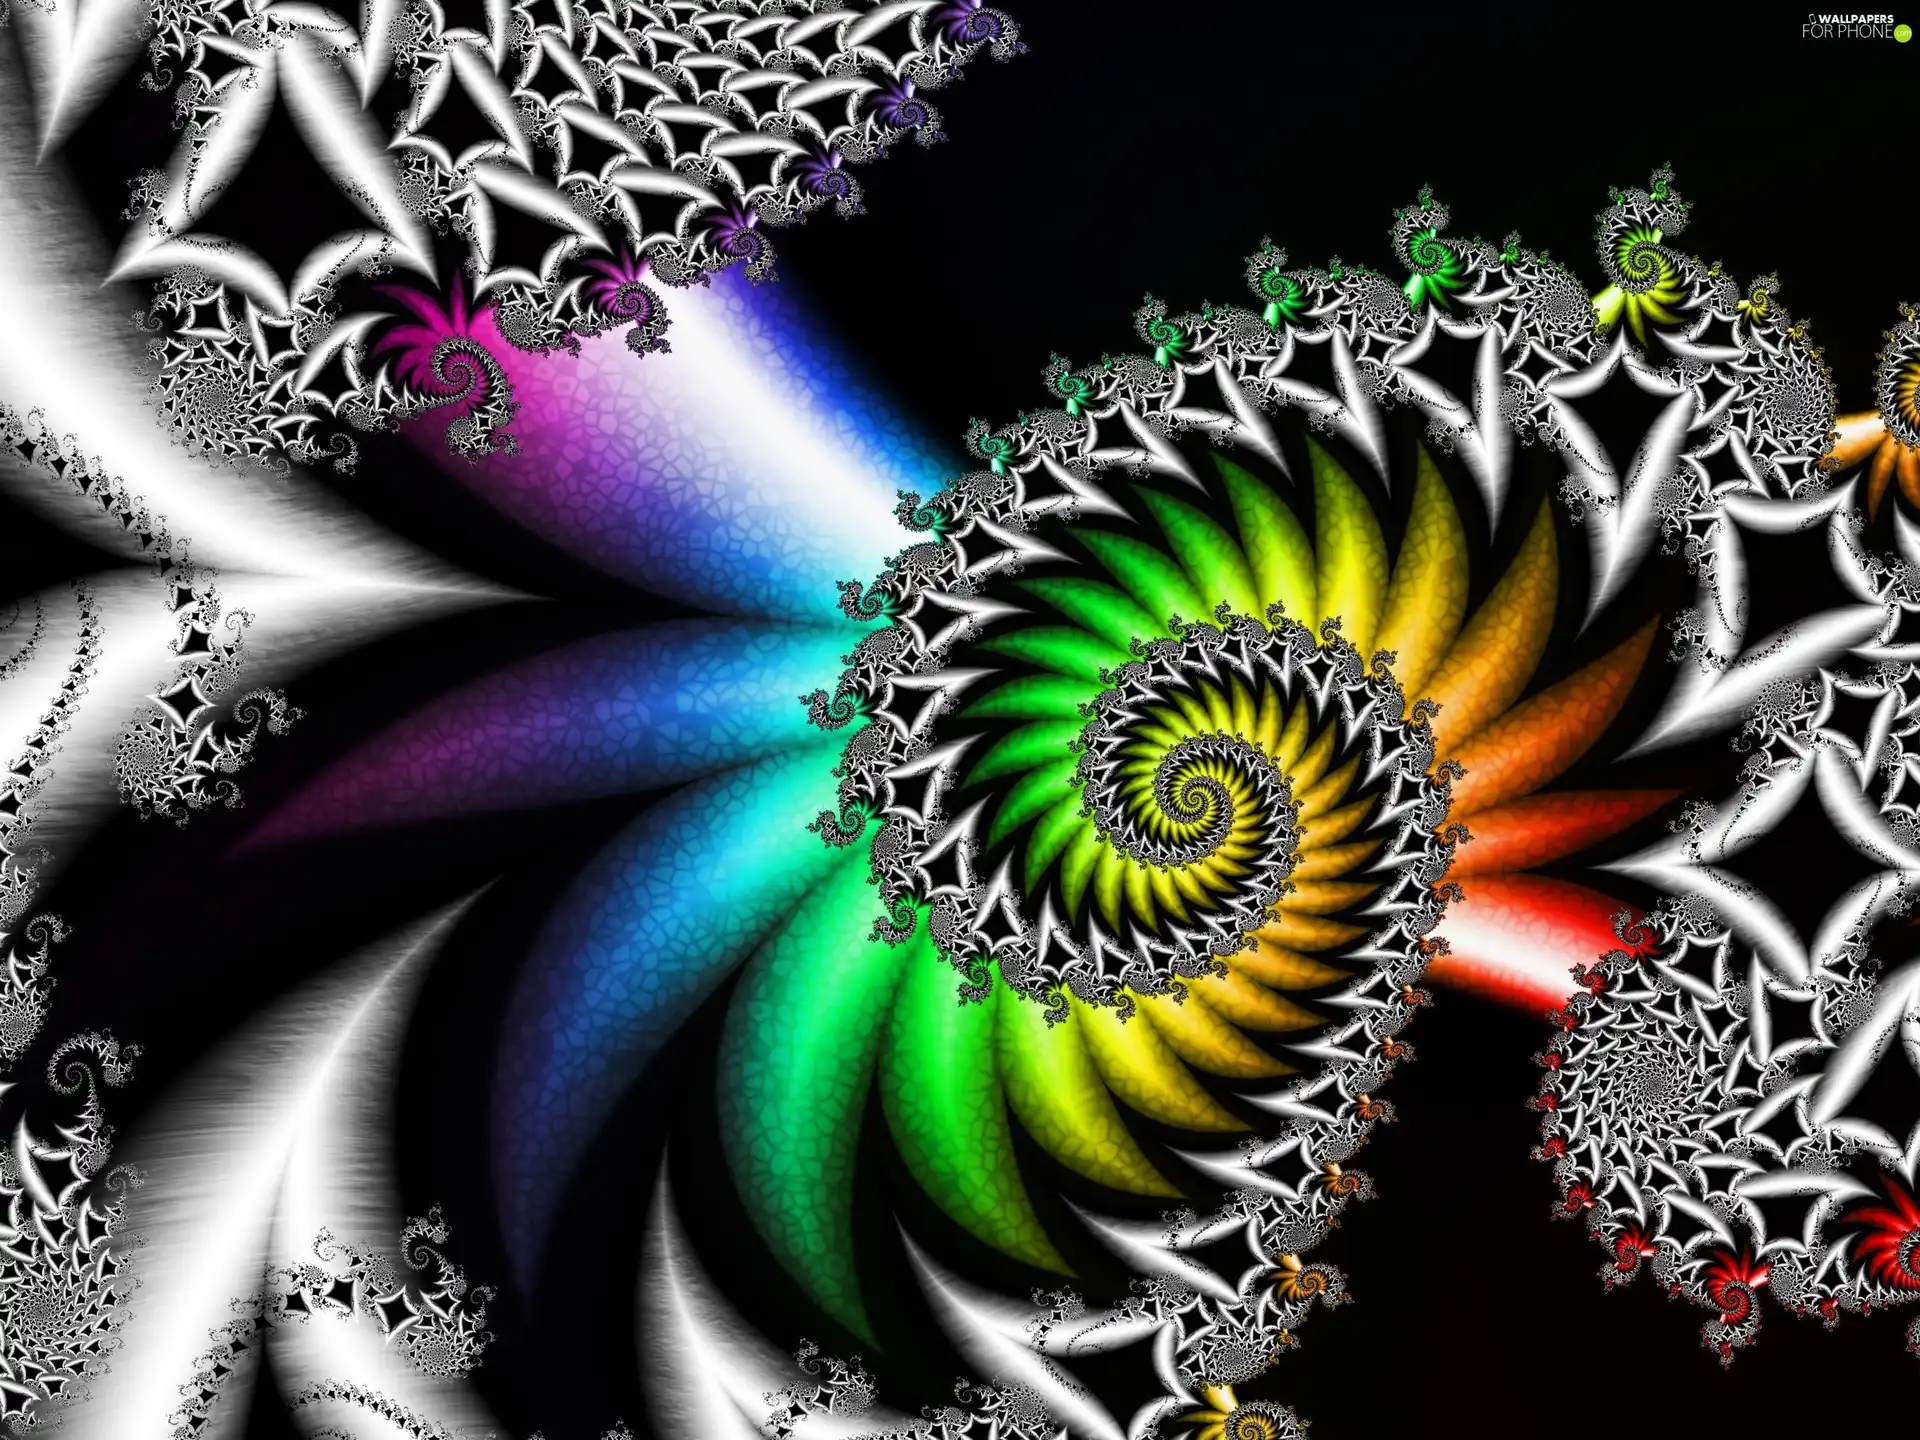 Coloured, Fraktal, graphics, spiral